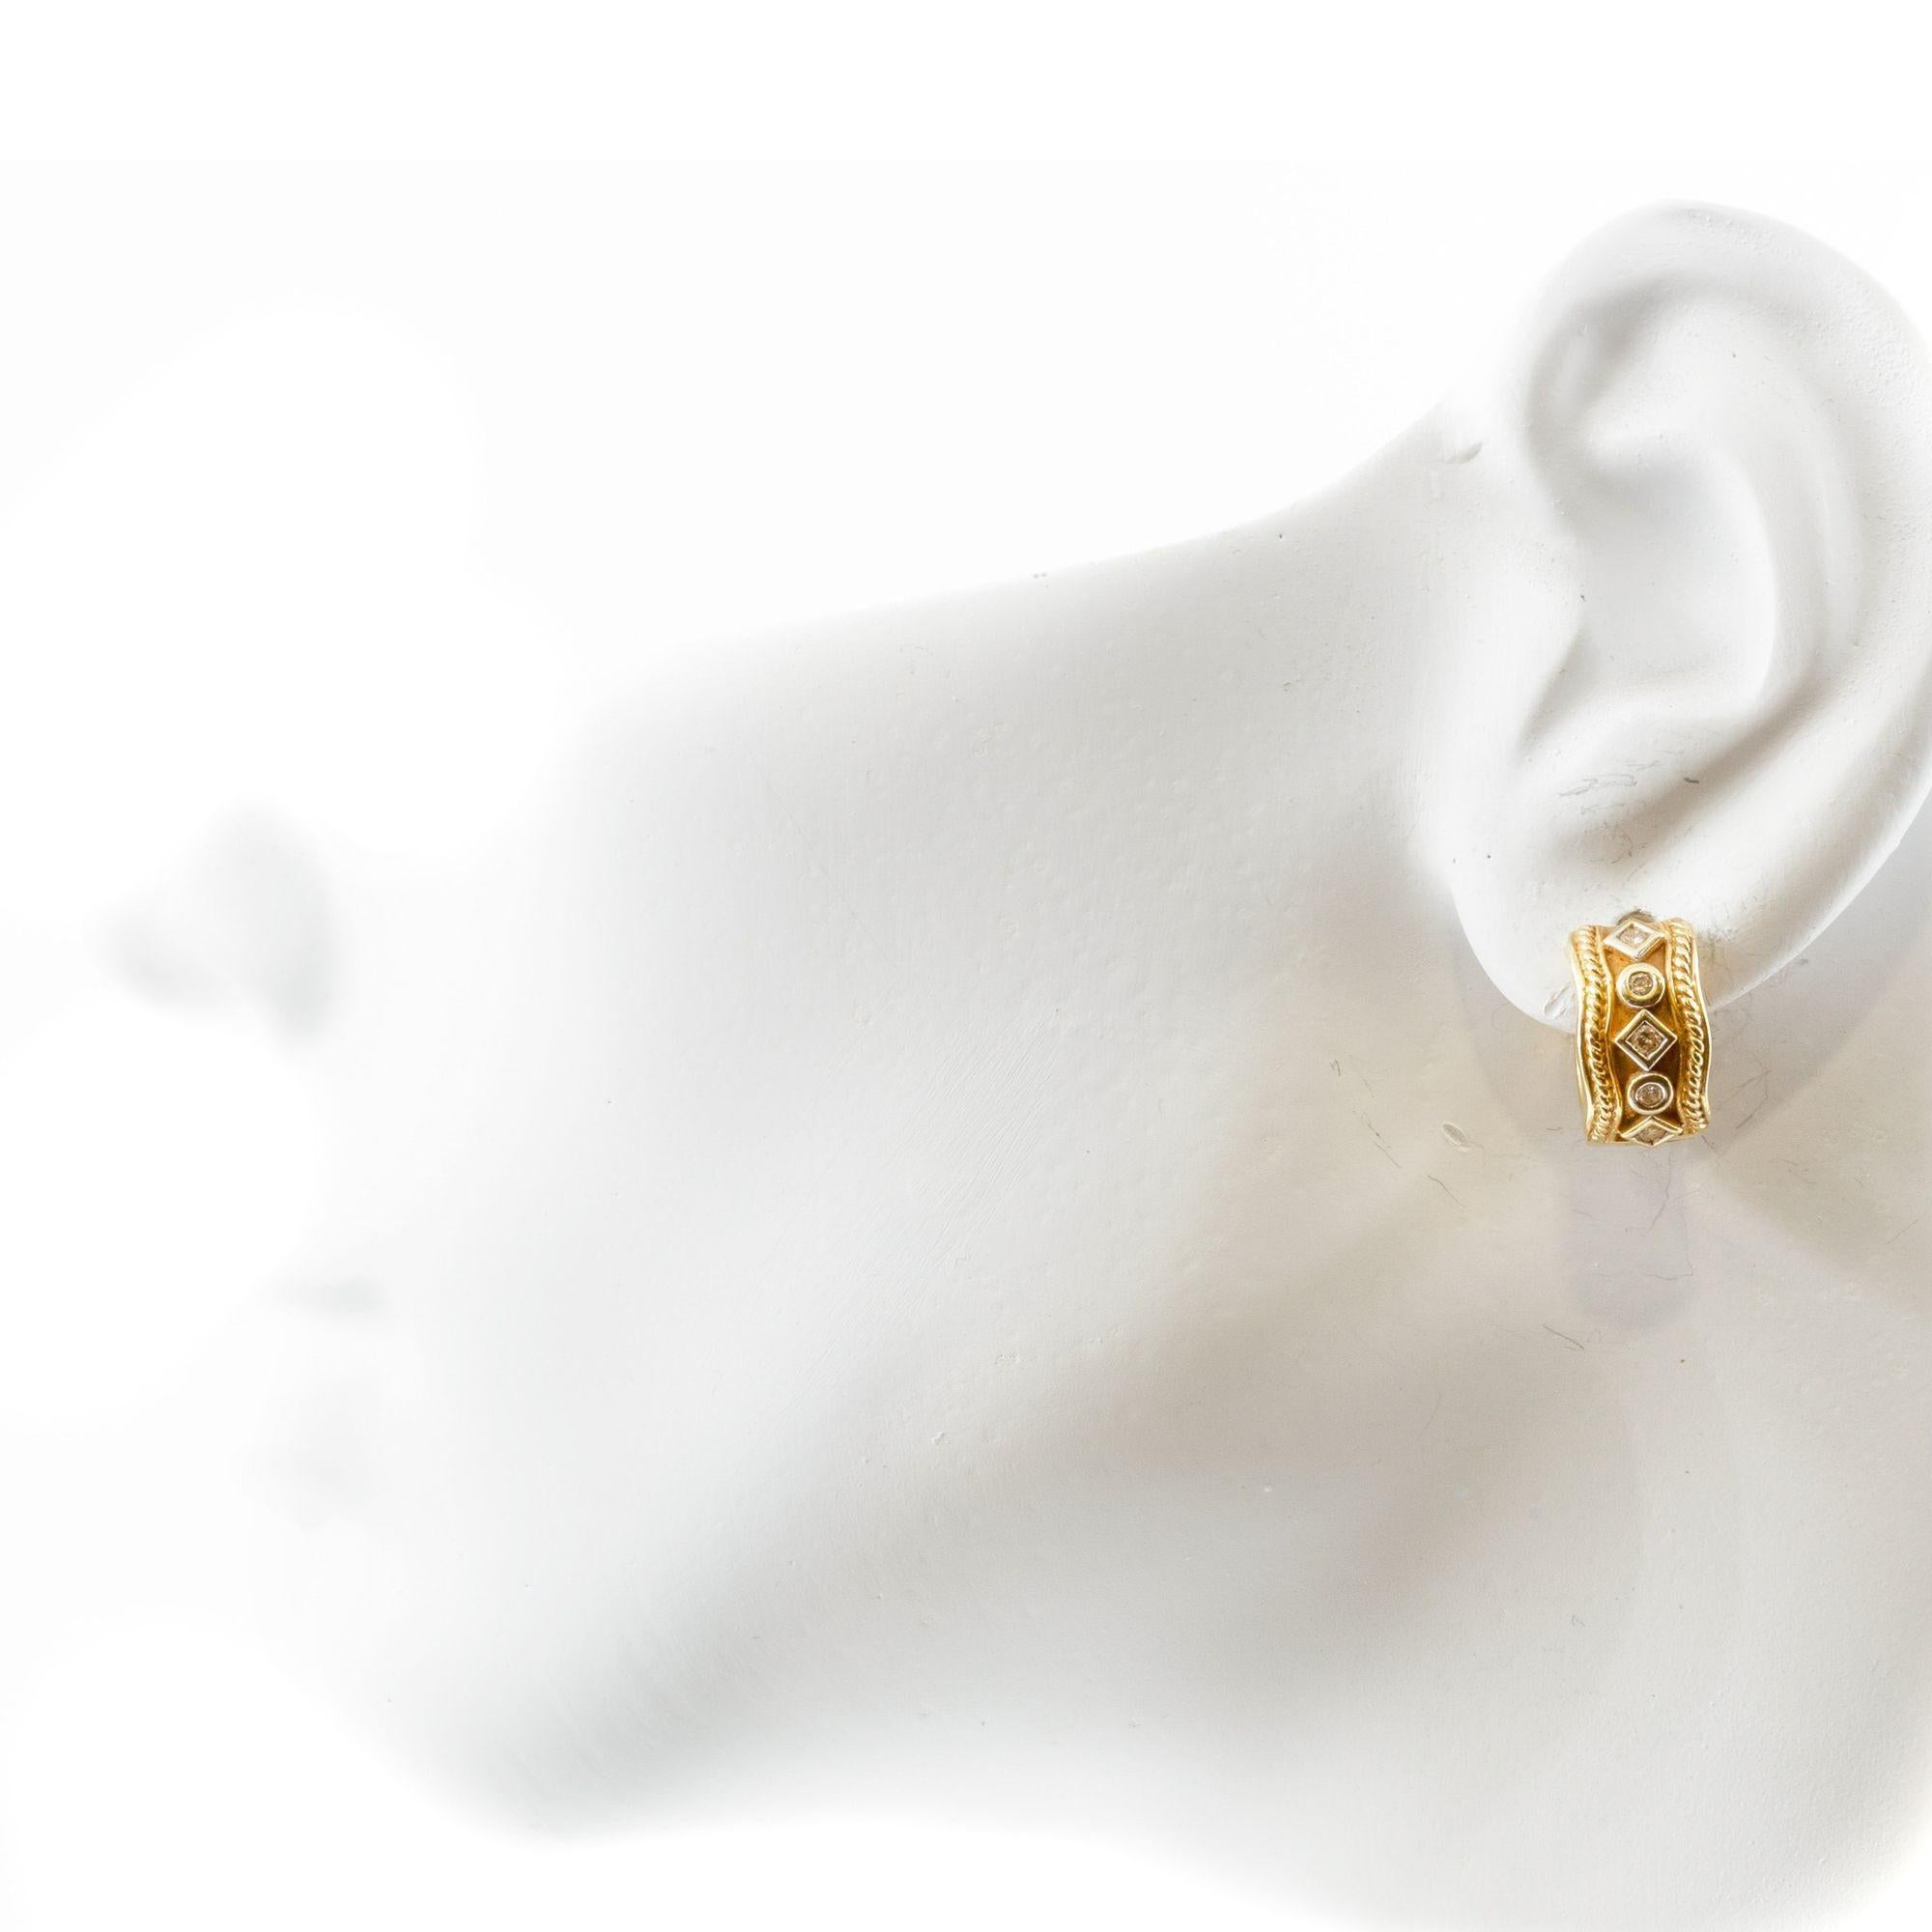 Paar 14K Gelbgold & Edelstein Squiggle Hoops
Artikel # C104610

Ein elegantes Paar Ohrringe aus 14-karätigem Gelbgold mit einem verschnörkelten Design und Edelsteinverzierungen. Die handwerkliche Verarbeitung zeigt eine Kombination von Texturen und